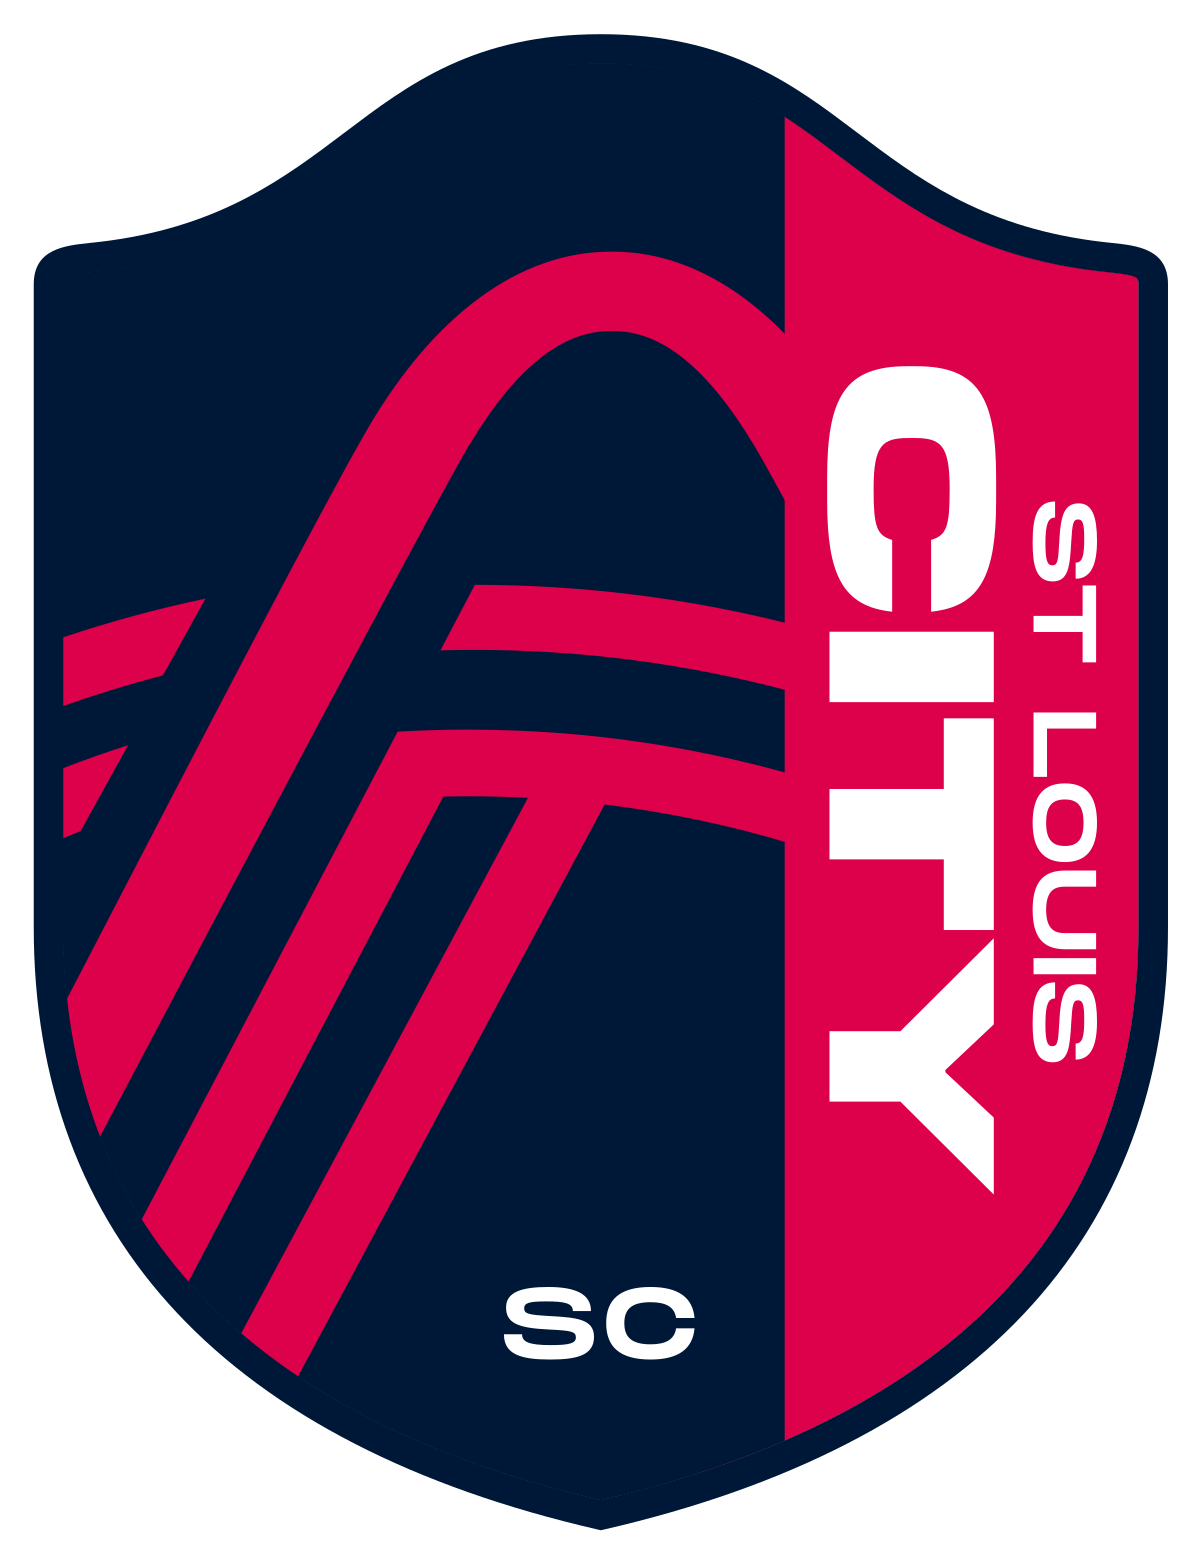 St._Louis_City_SC_logo.svg